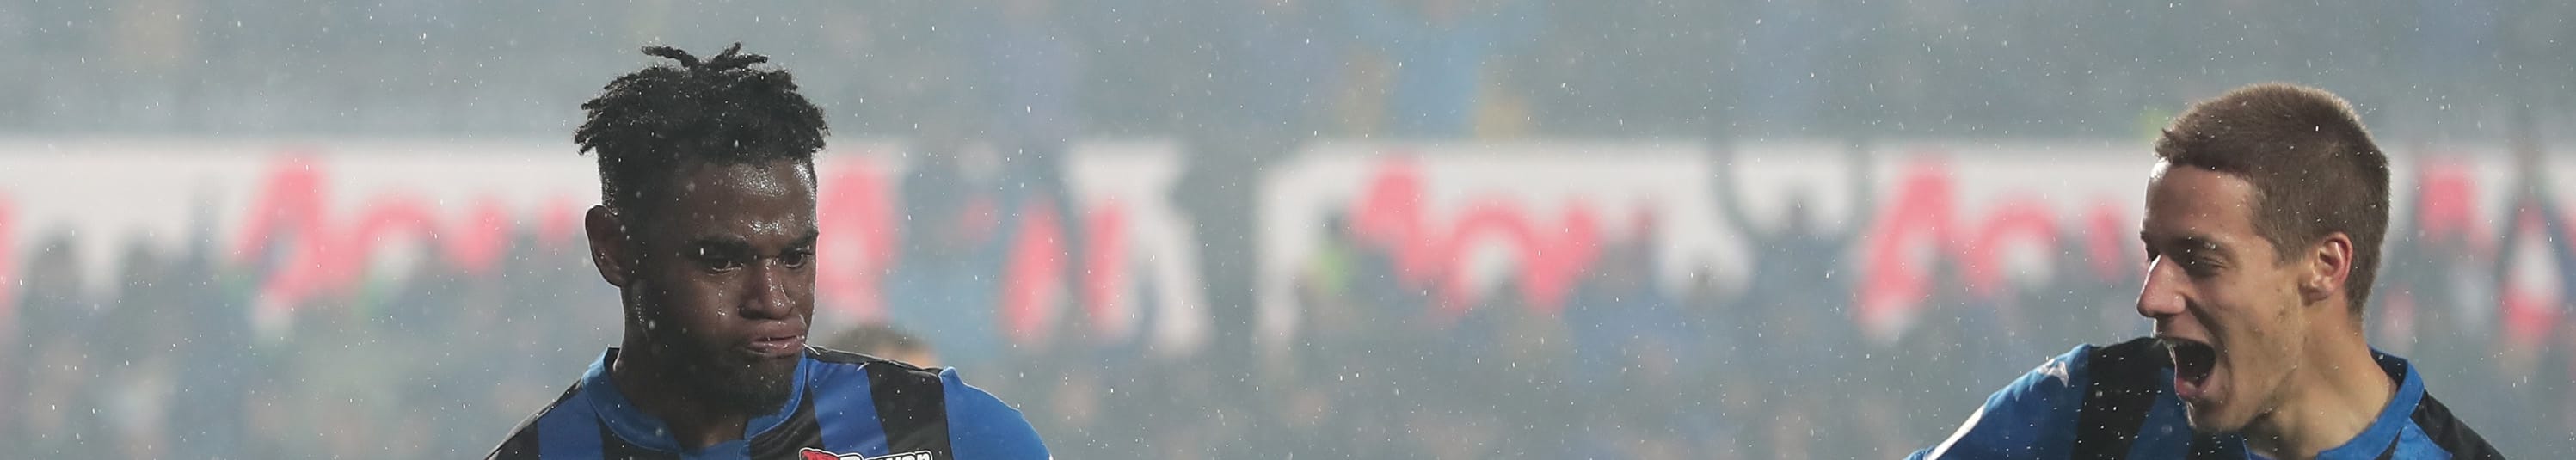 Atalanta-Chievo, una partita dall'esito scontato?